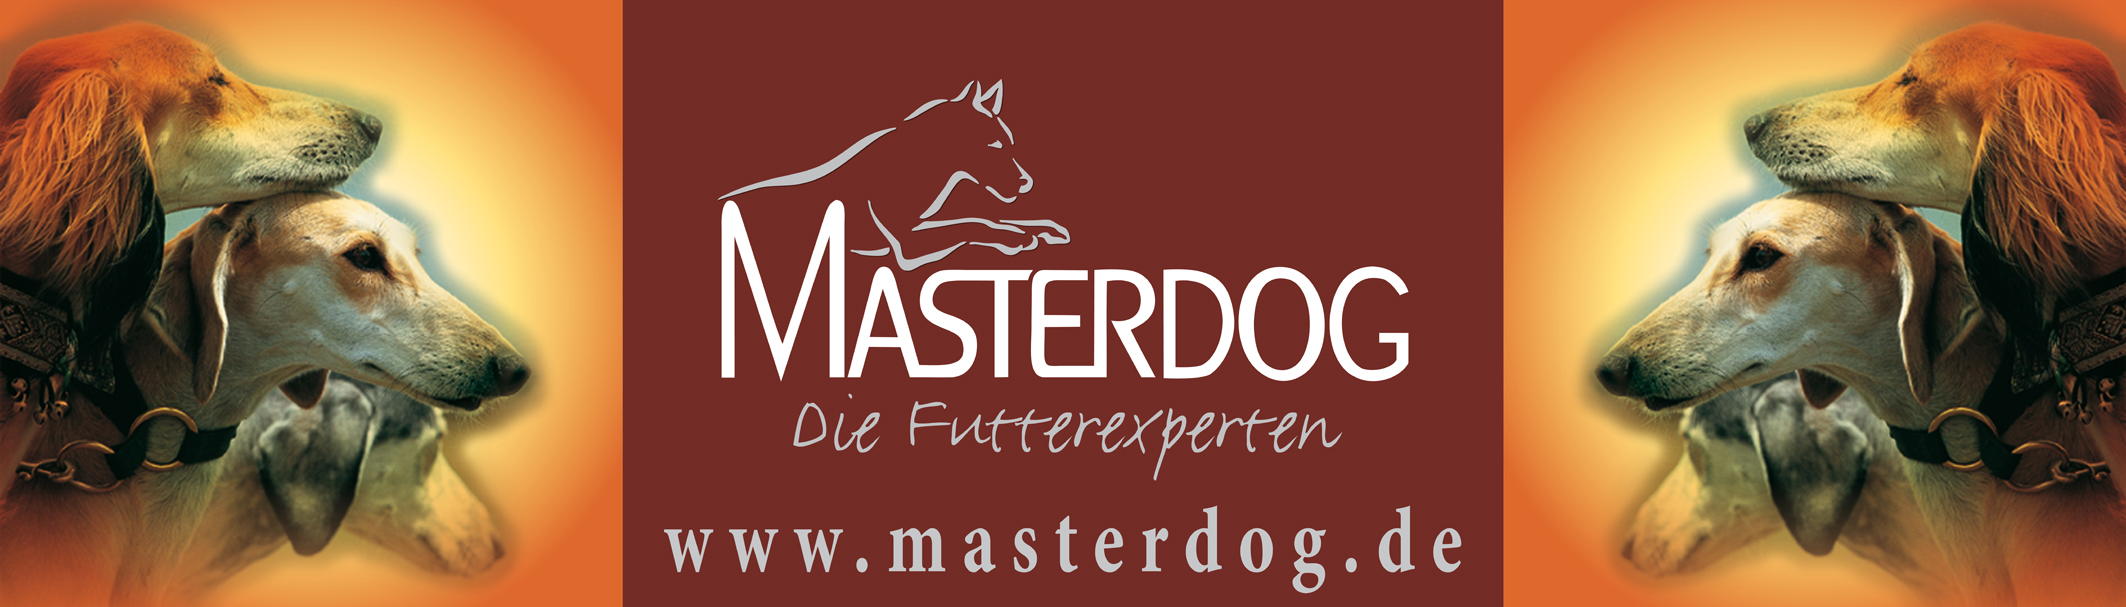 Masterdog